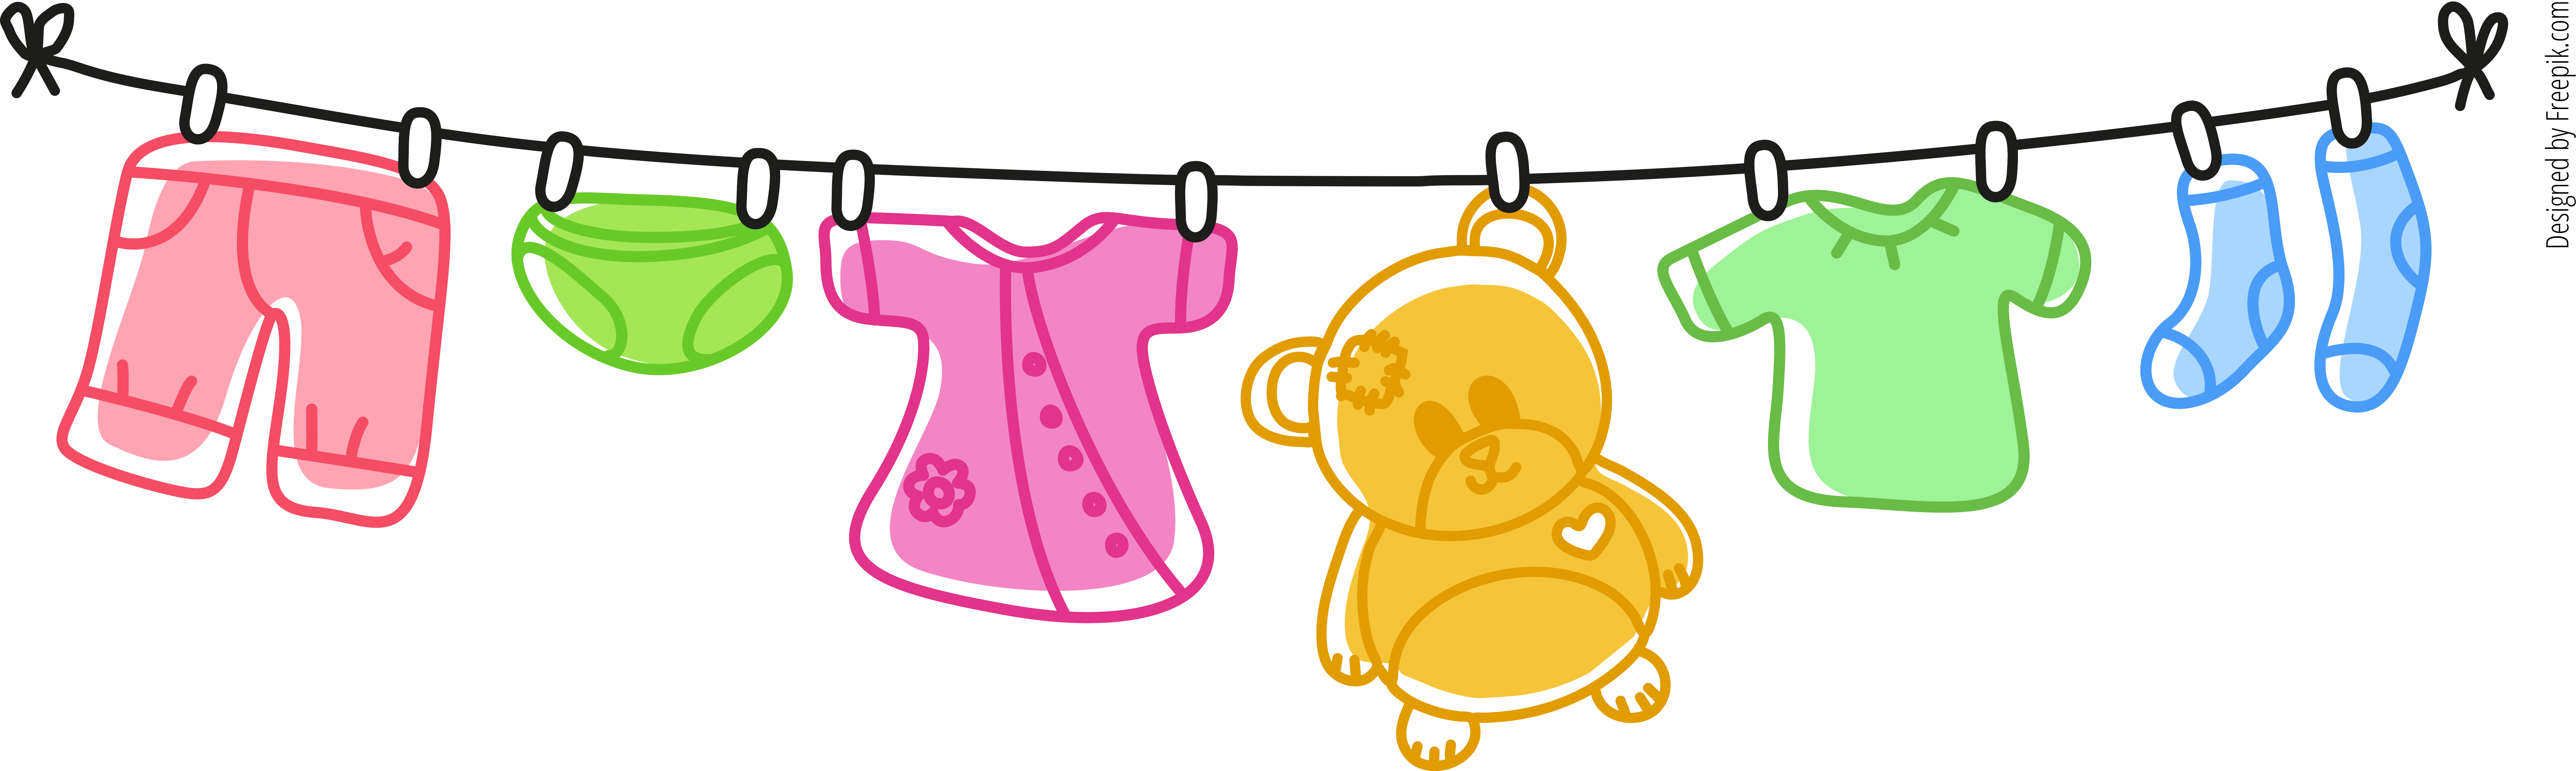 Картинка одежды на прозрачном фоне. Детские вещи на веревке. Нарисованная детская одежда на веревке. Детская одежда на бельевой веревке. Детское белье на веревке.